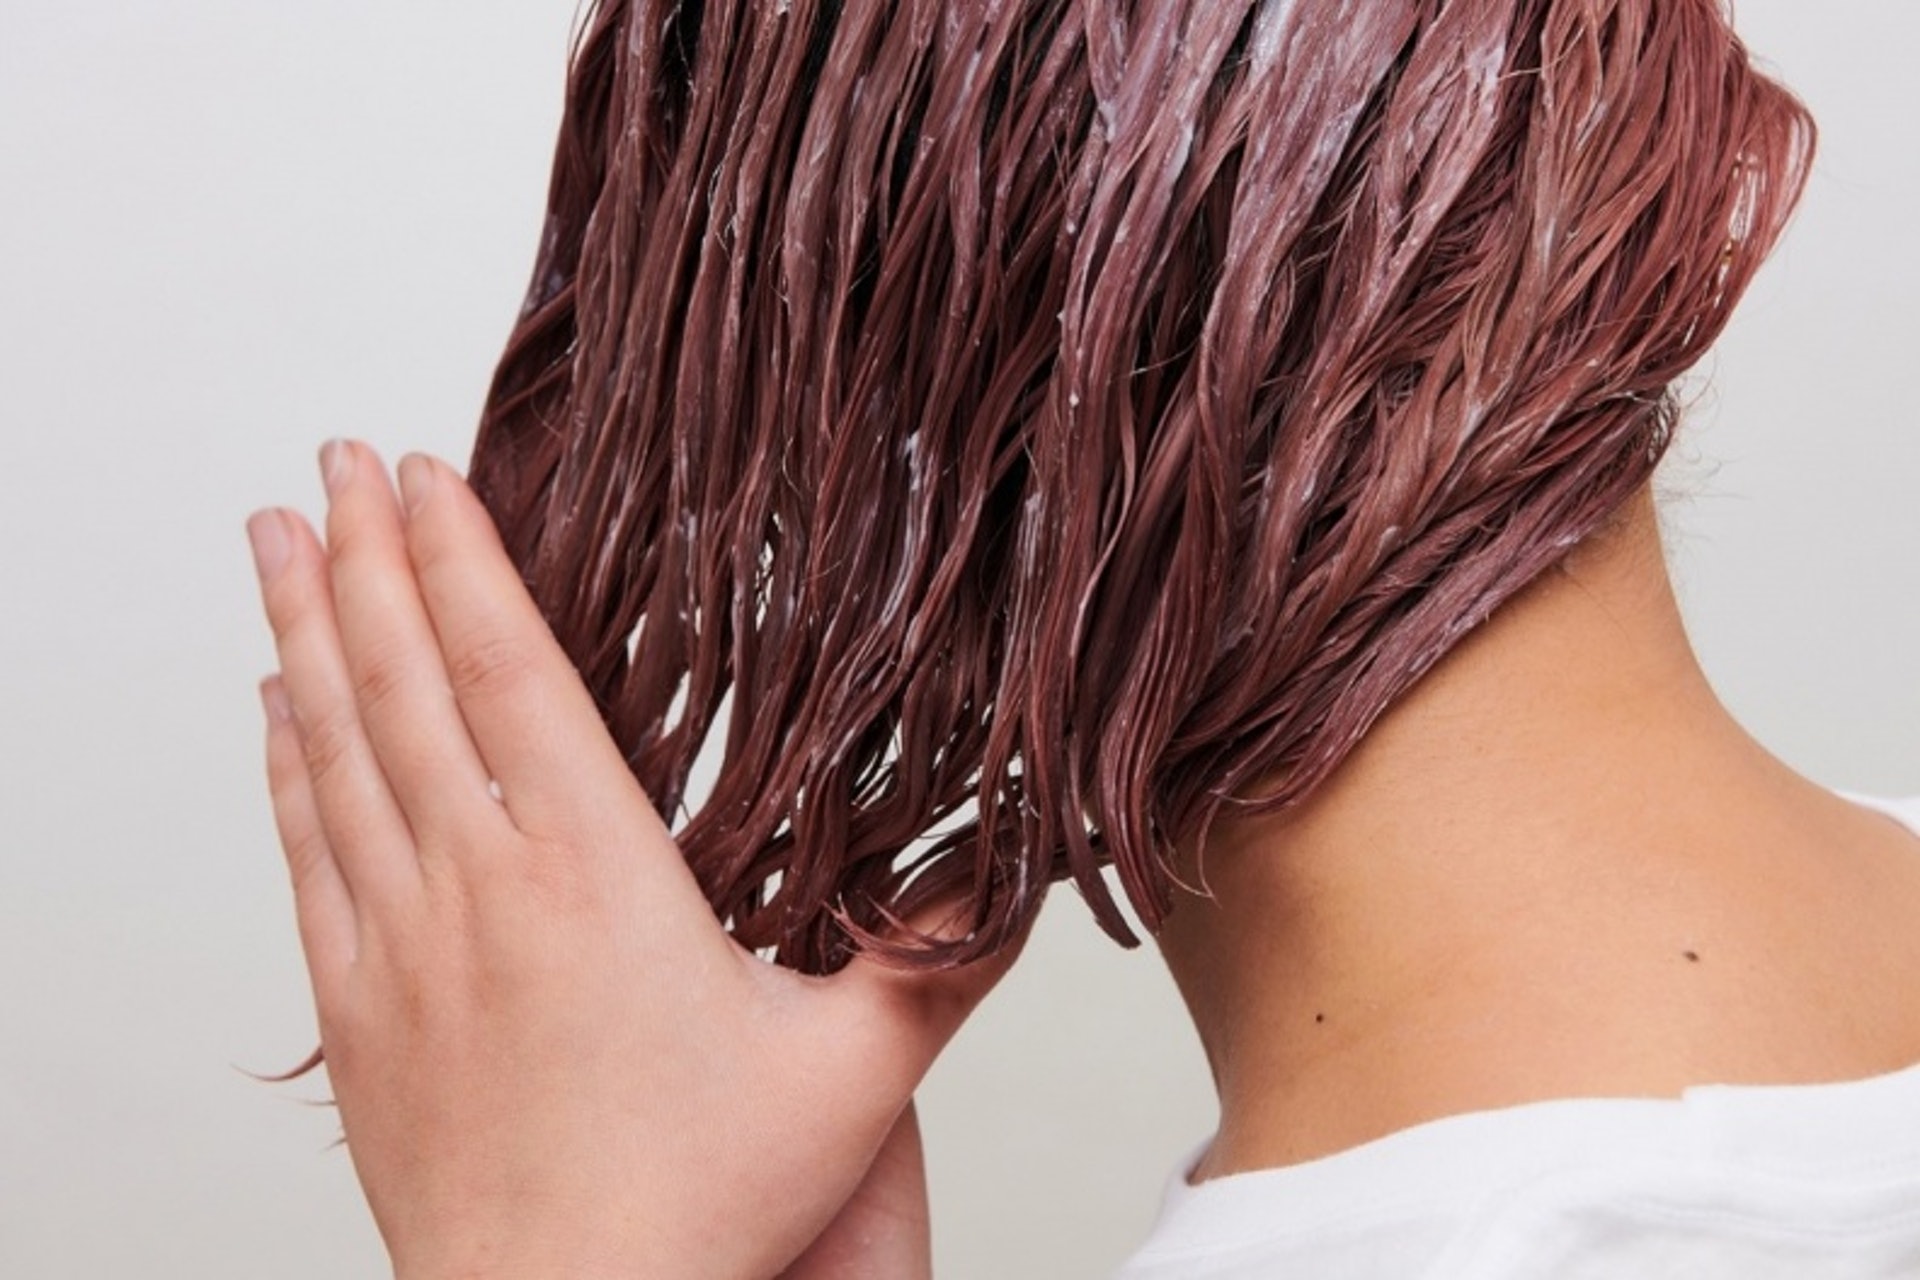 漂髮後應選用修護漂染頭髮的洗髮露，通常有助滋潤和修補受損髮絲。而深層護理的髮膜則可為頭髮增添營養、修補毛麟片及補充水份，加強頭髮結構。（圖片：Shutterstock）